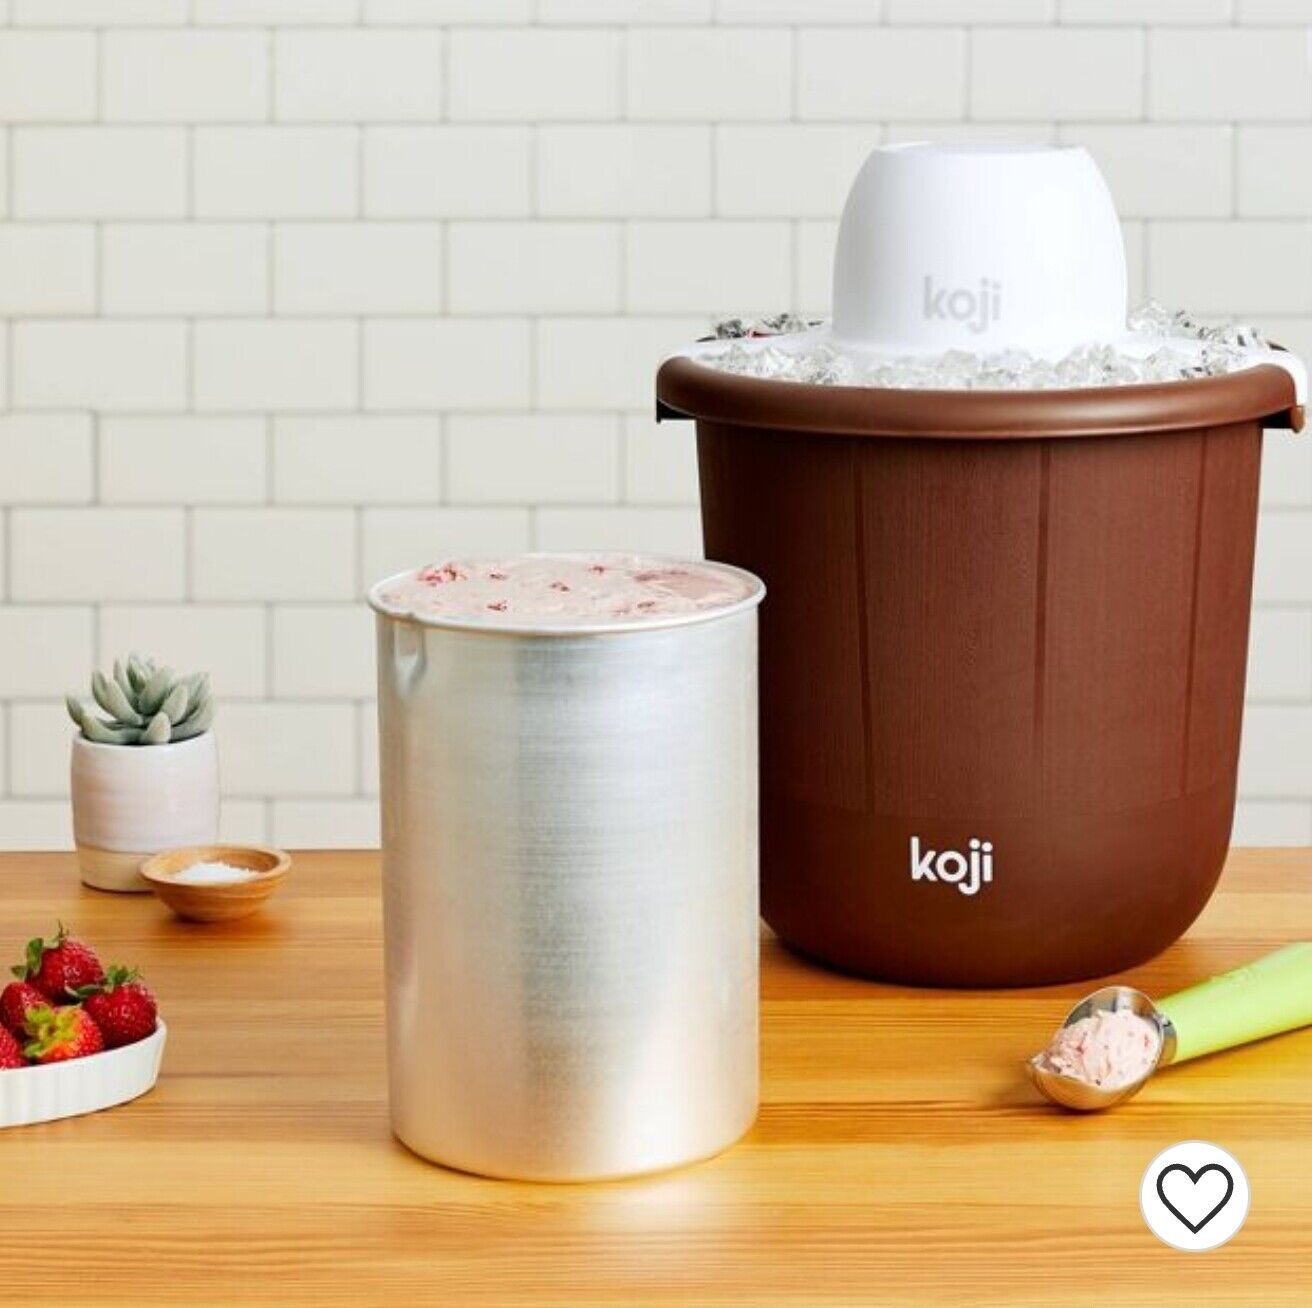 How To Use Koji Ice Cream Maker